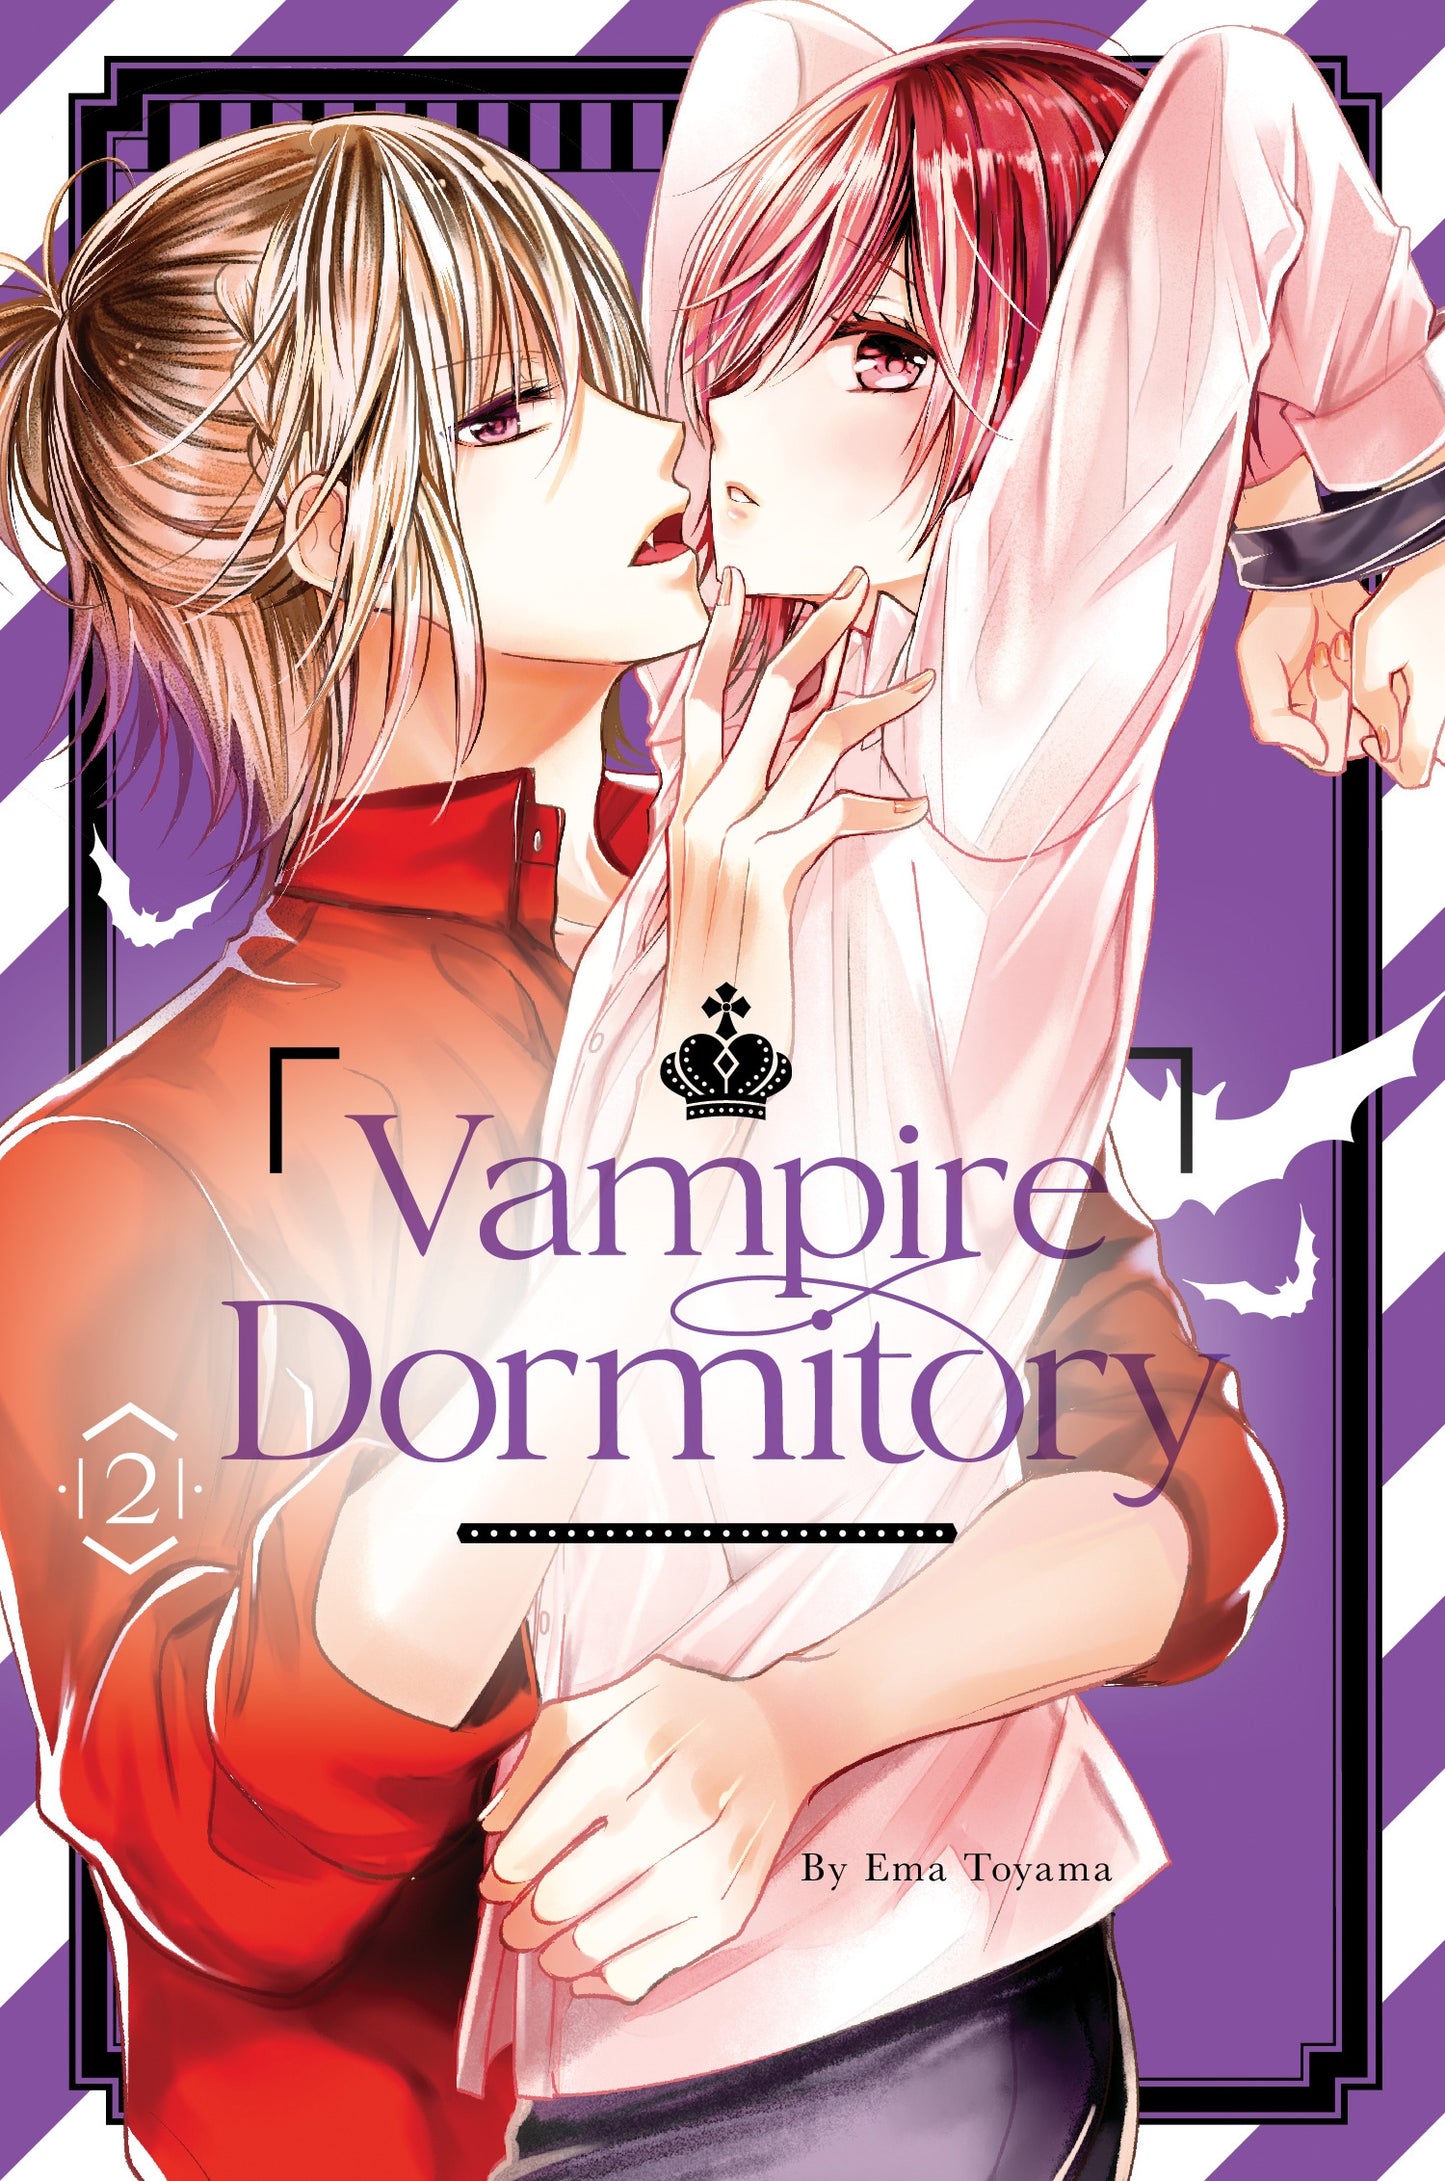 Vampire Dormitory 2 - Manga Warehouse